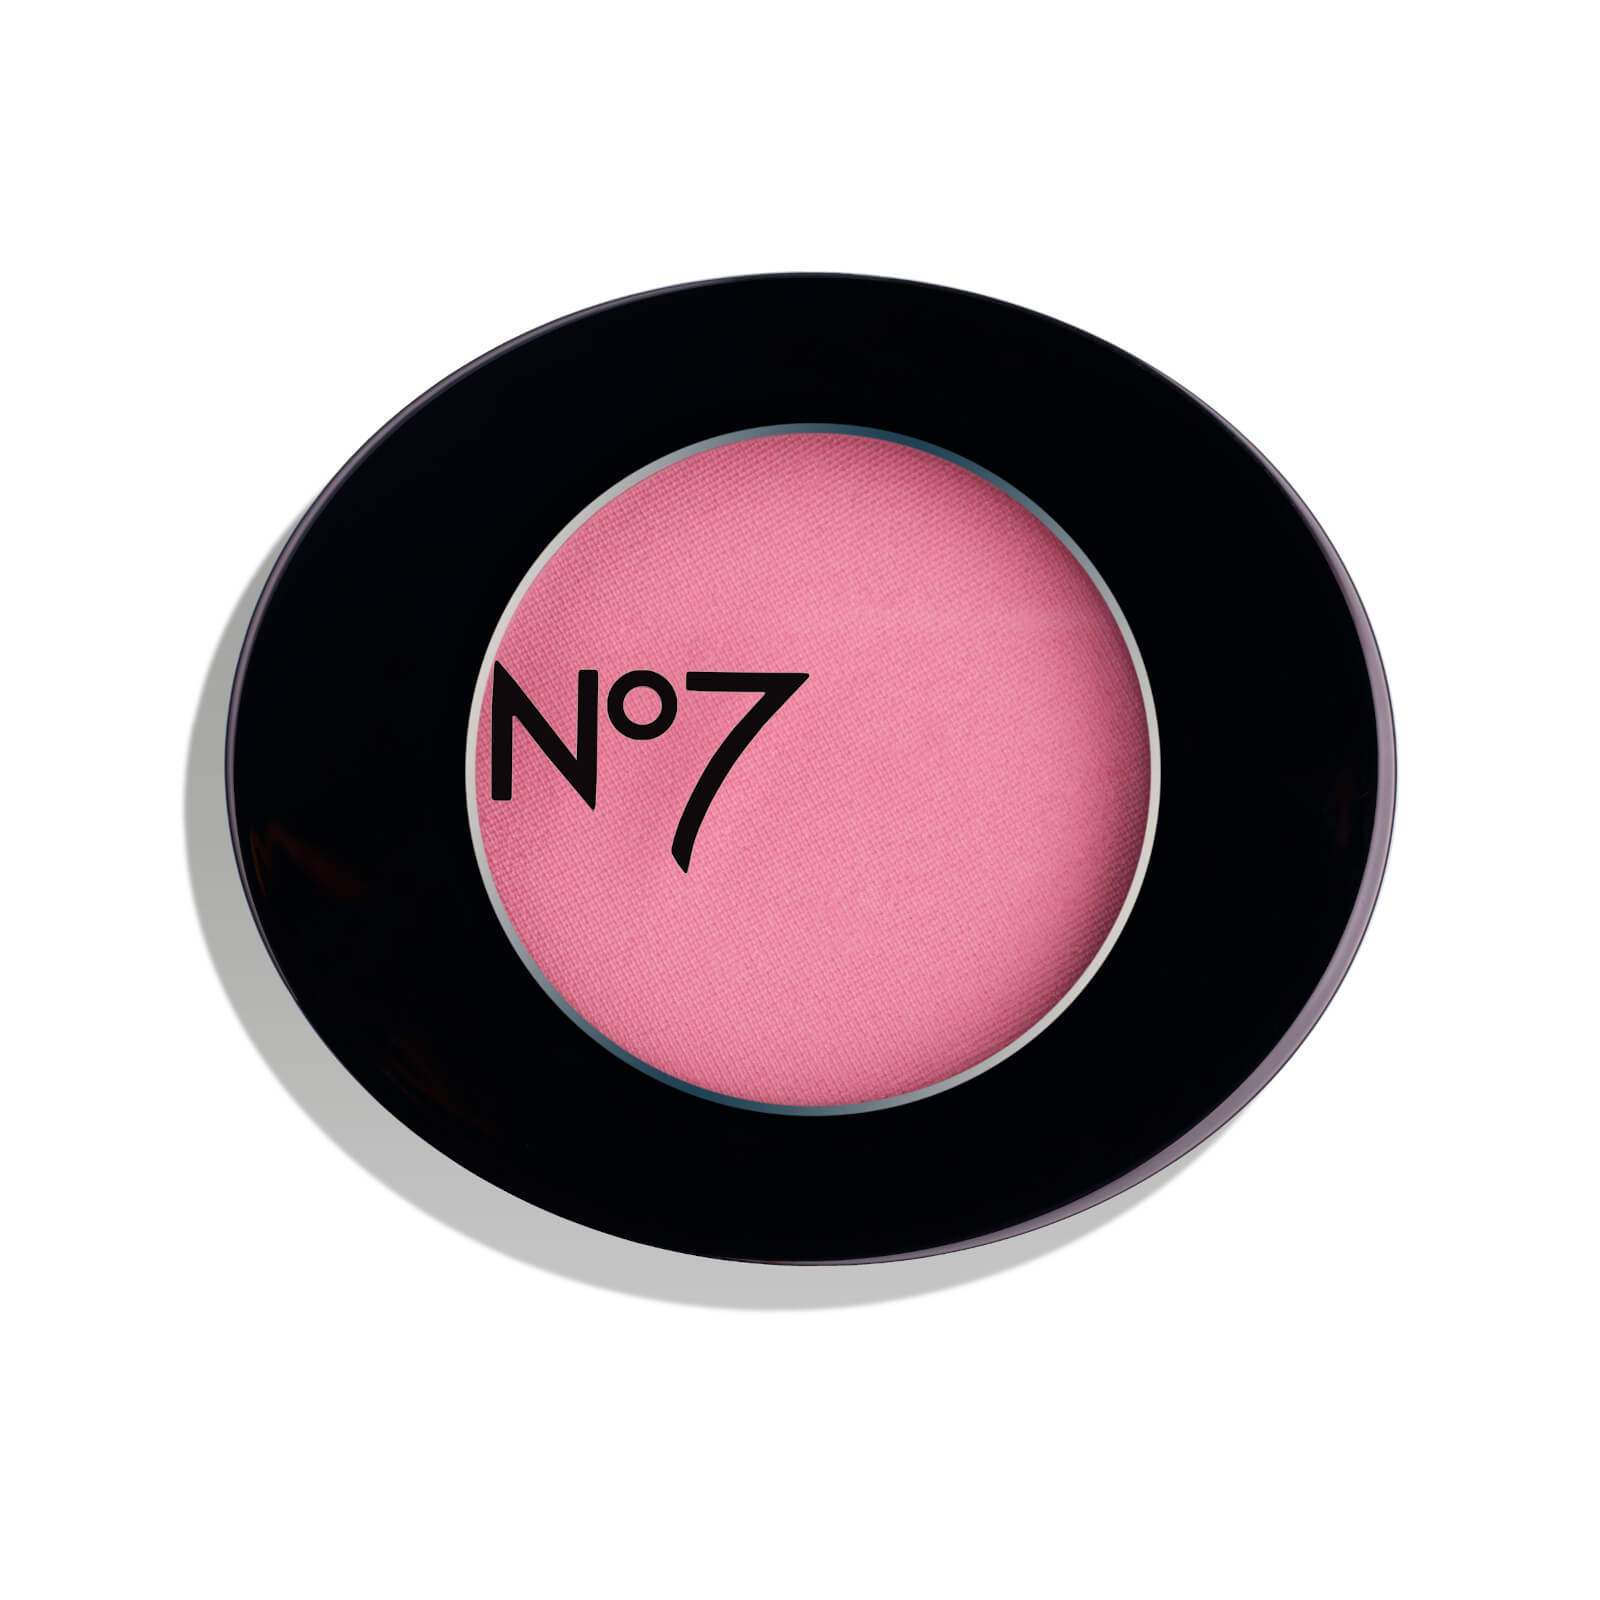 No7 Match Made Blusher 3g (various Shades) - Damson Mist